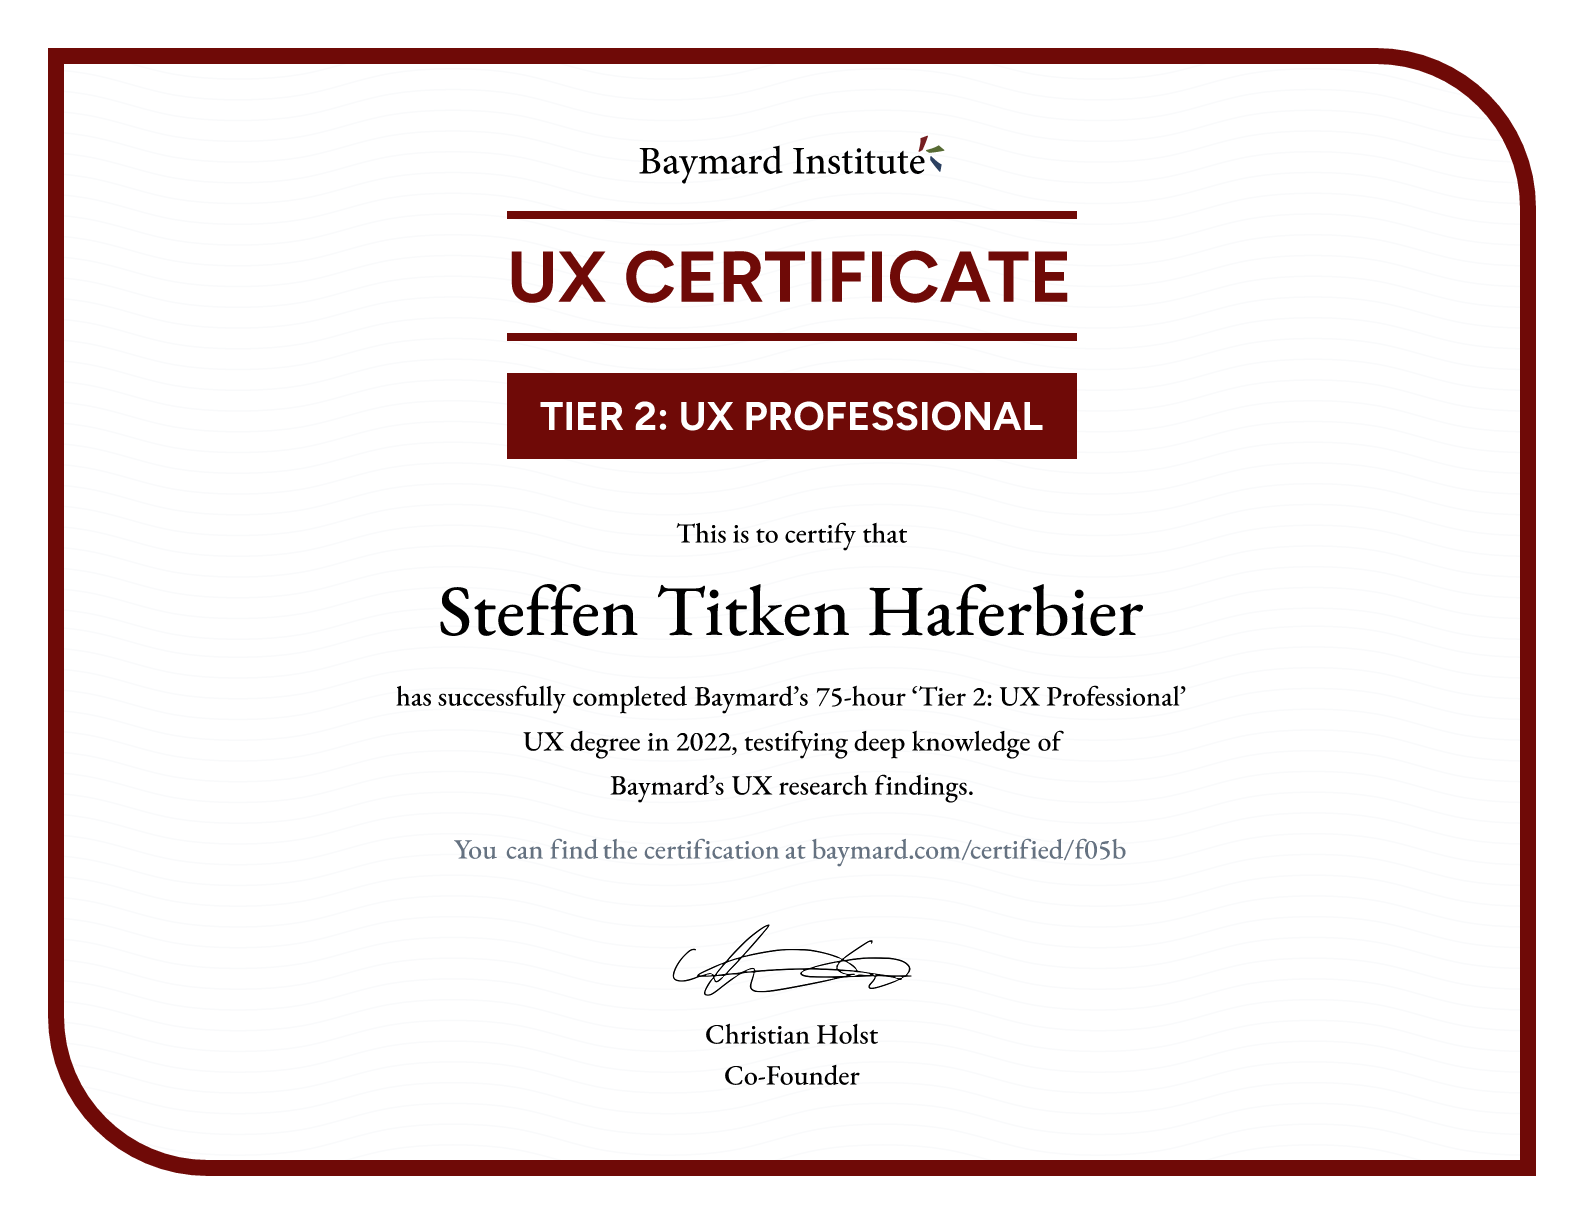 Steffen Titken Haferbier’s certificate